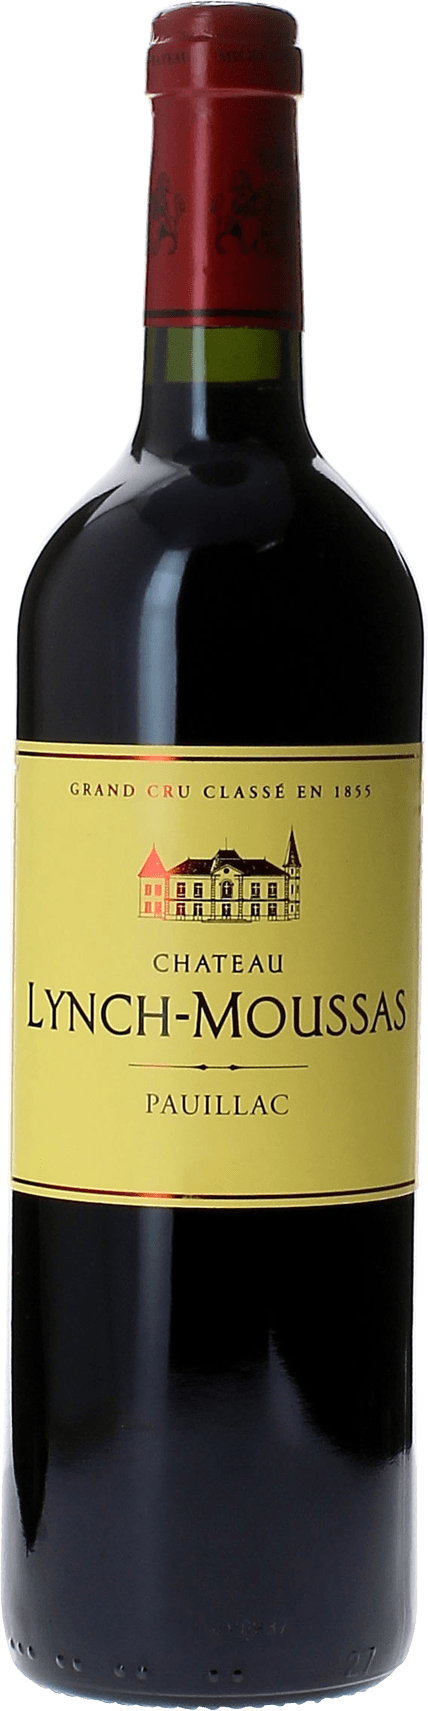 Lynch moussas 2013  Pauillac, Bordeaux rouge